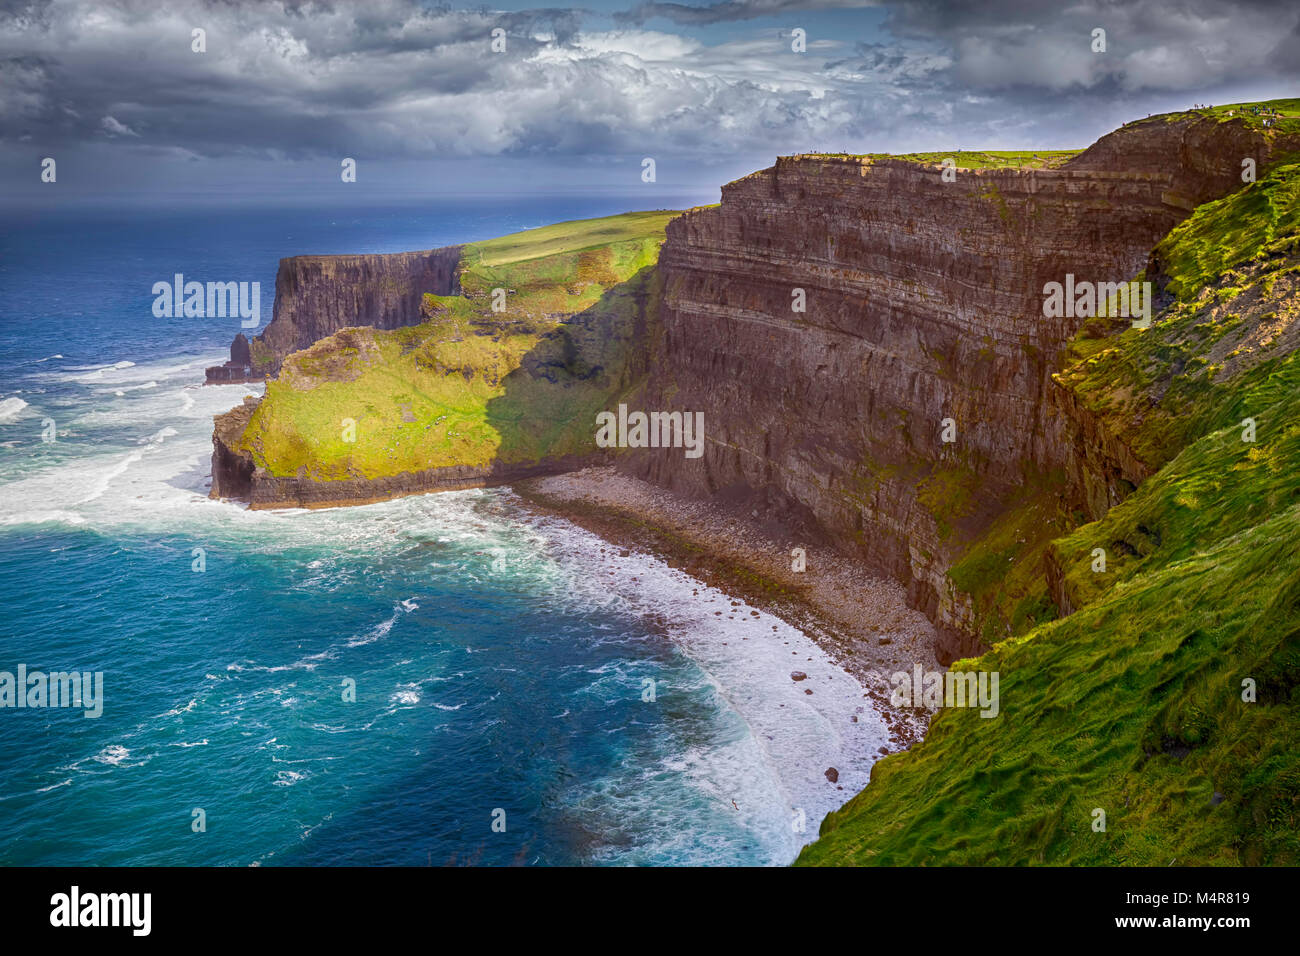 Los Acantilados de Moher acantilados están situados en el borde suroeste de la región de Burren en el condado de Clare, Irlanda. Foto de stock